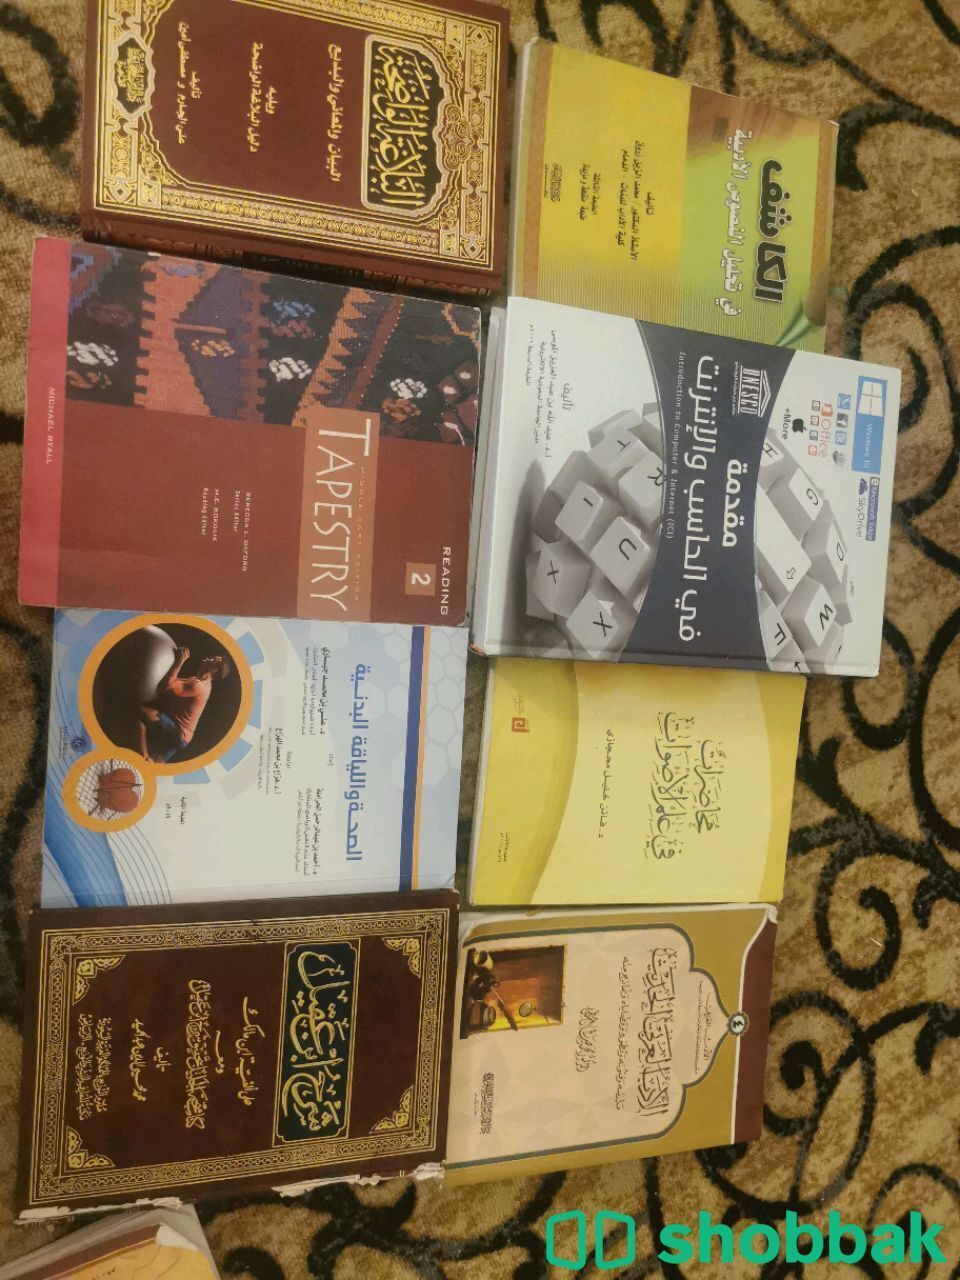 بيع كتب جامعيه مستخدمه استخدام بيسيط Shobbak Saudi Arabia